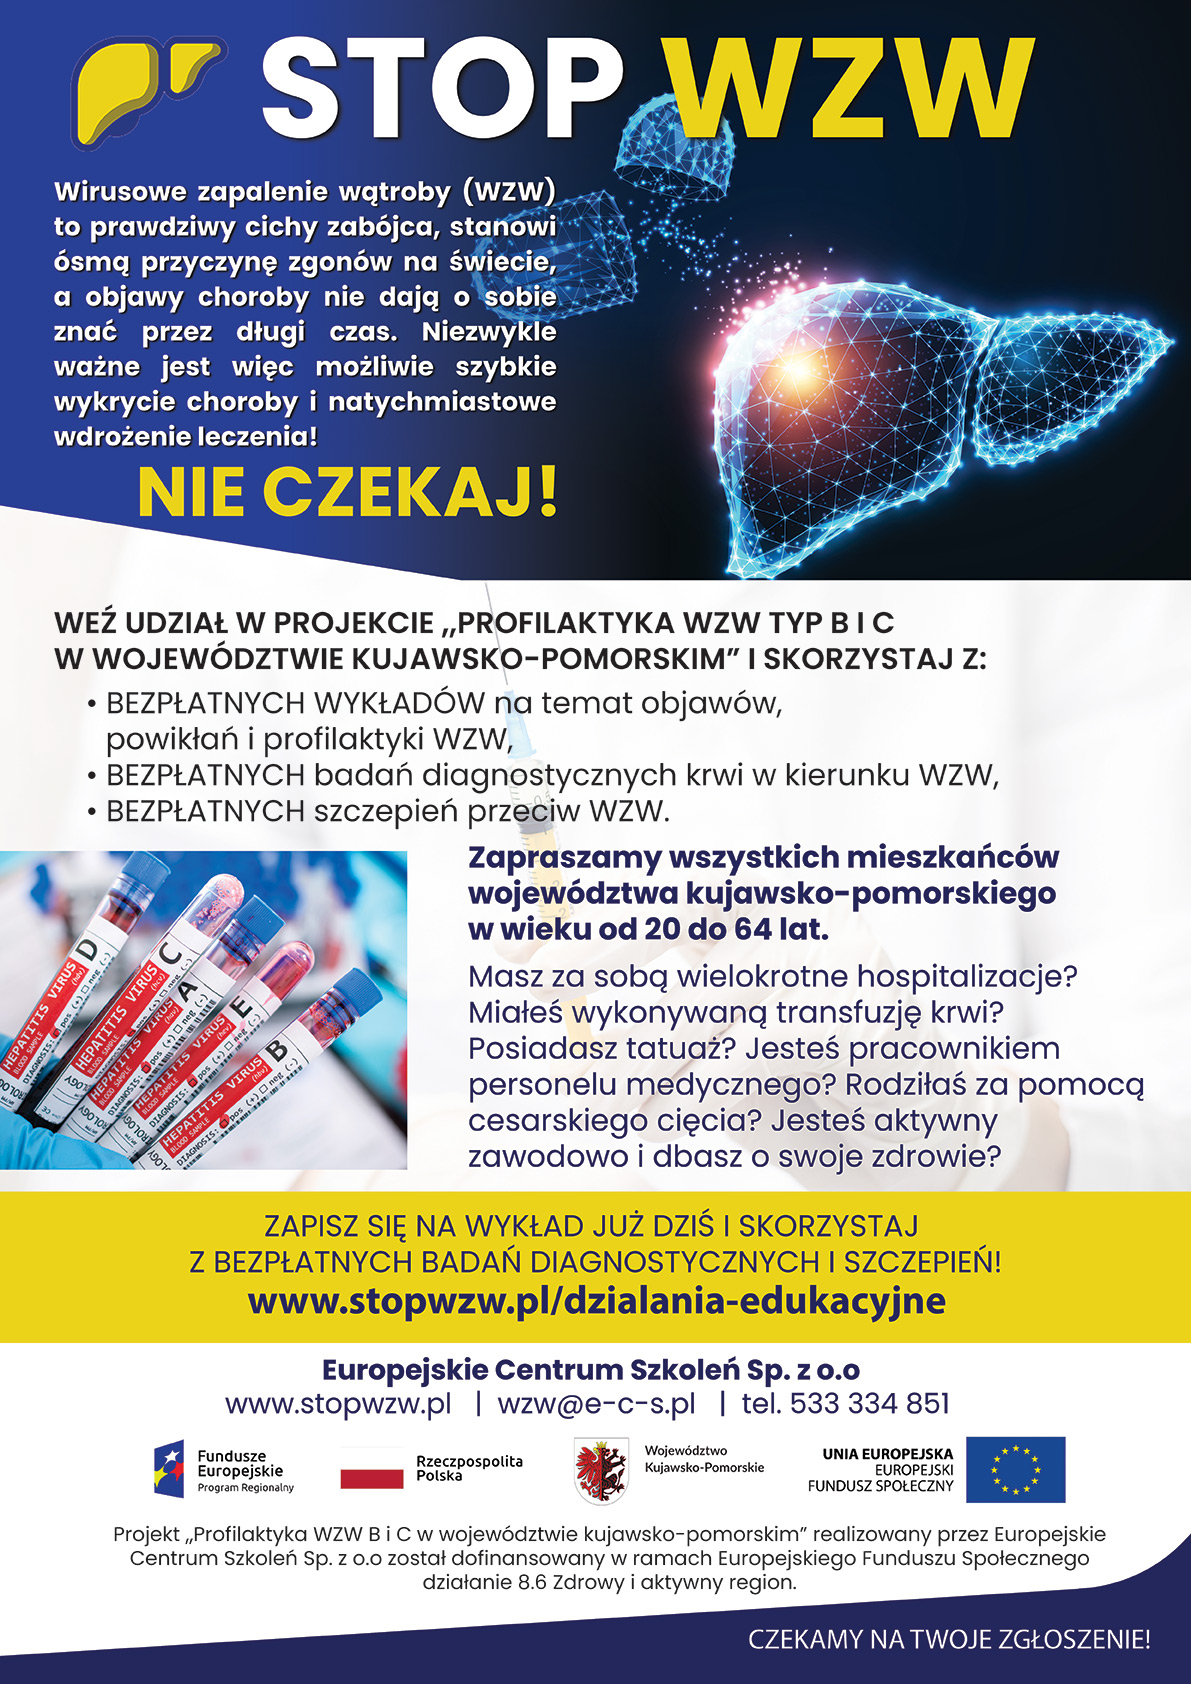 Plakat informujący o programie Profilaktyka WZW B i C w województwie kujawsko-pomorskim